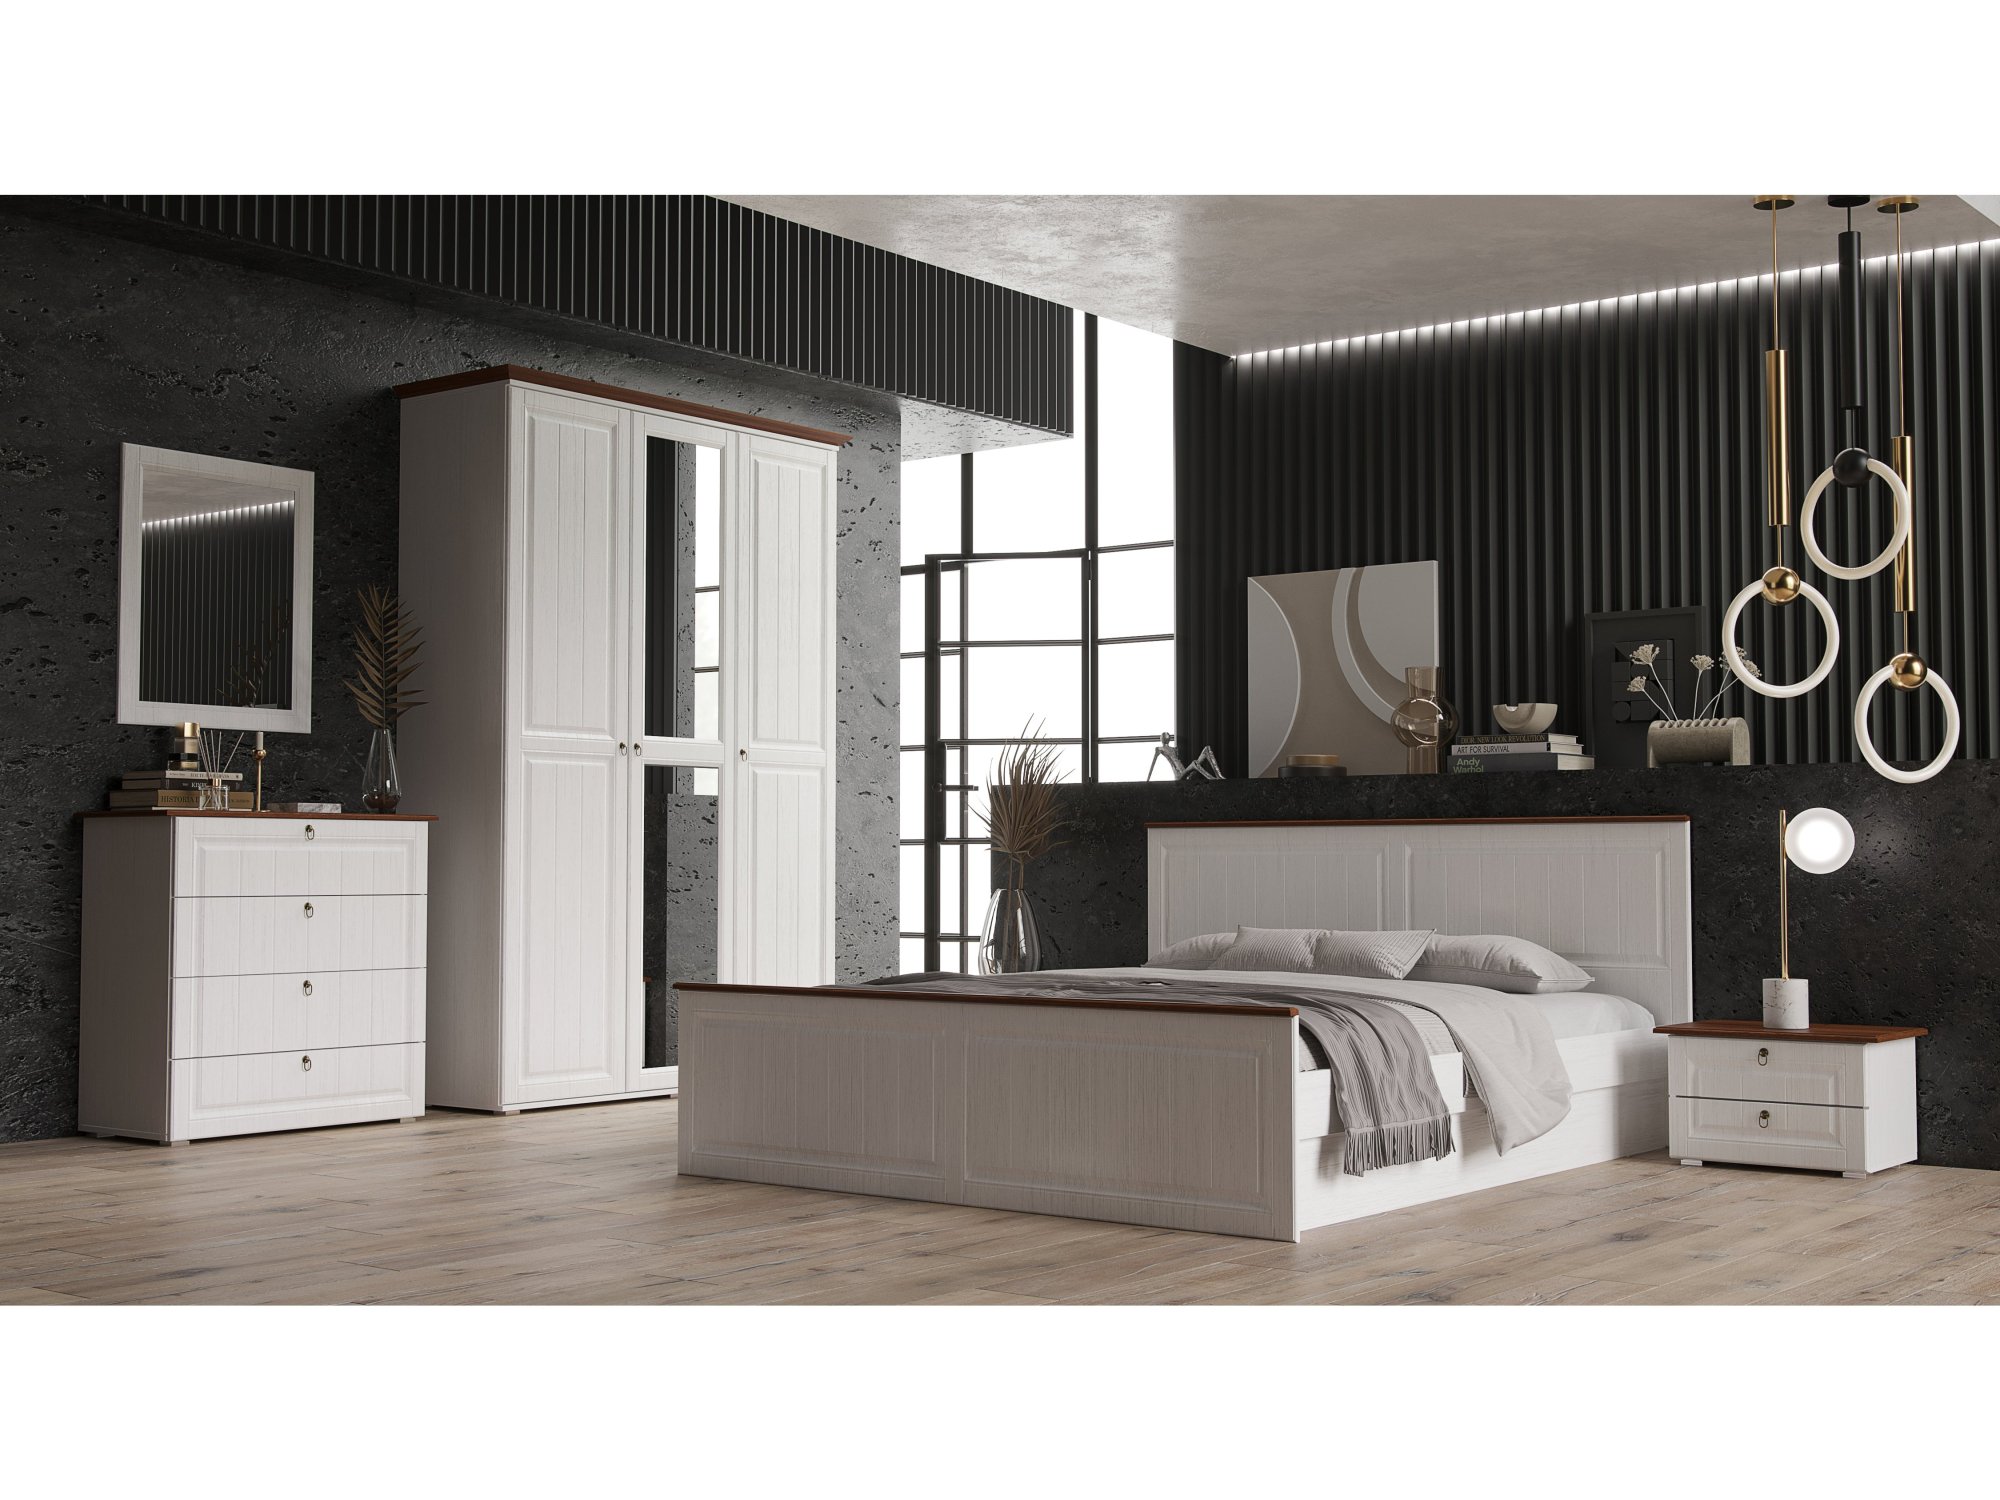 Модульная спальня Валенсия (Белый матовый / Орех) Белый, Коричневый, МДФ, ЛДСП модульная спальня вояж белый матовый венге белый коричневый темный мдф лдсп